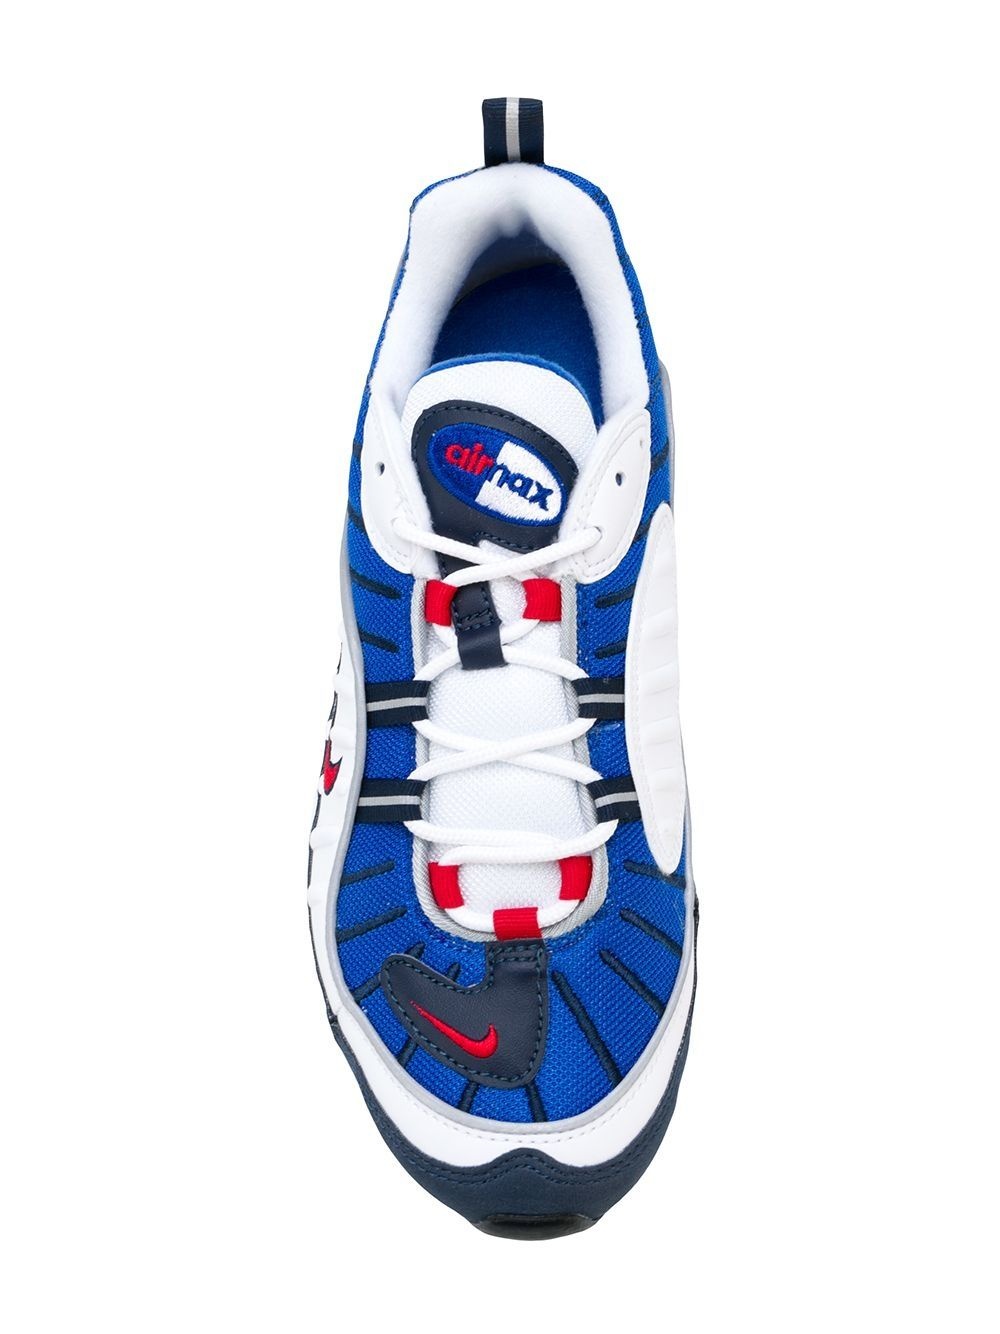 Air Max 98 "Gundam" sneakers - 4